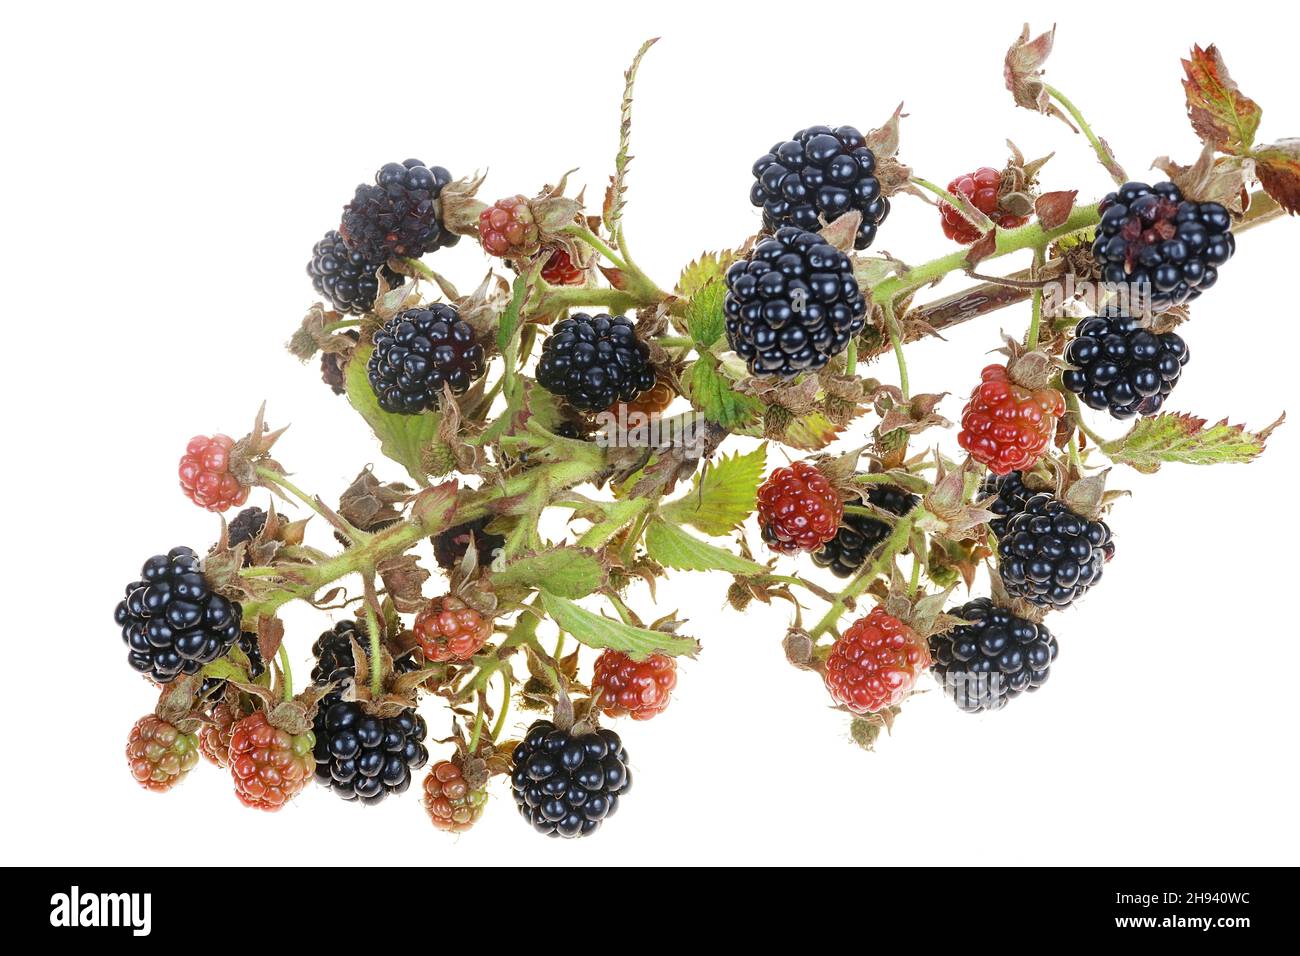 Bayas maduras e inmaduras de la fruta del blackberry del jardín en rama afilada espinosa. Aislado en blanco macro-estudio Foto de stock